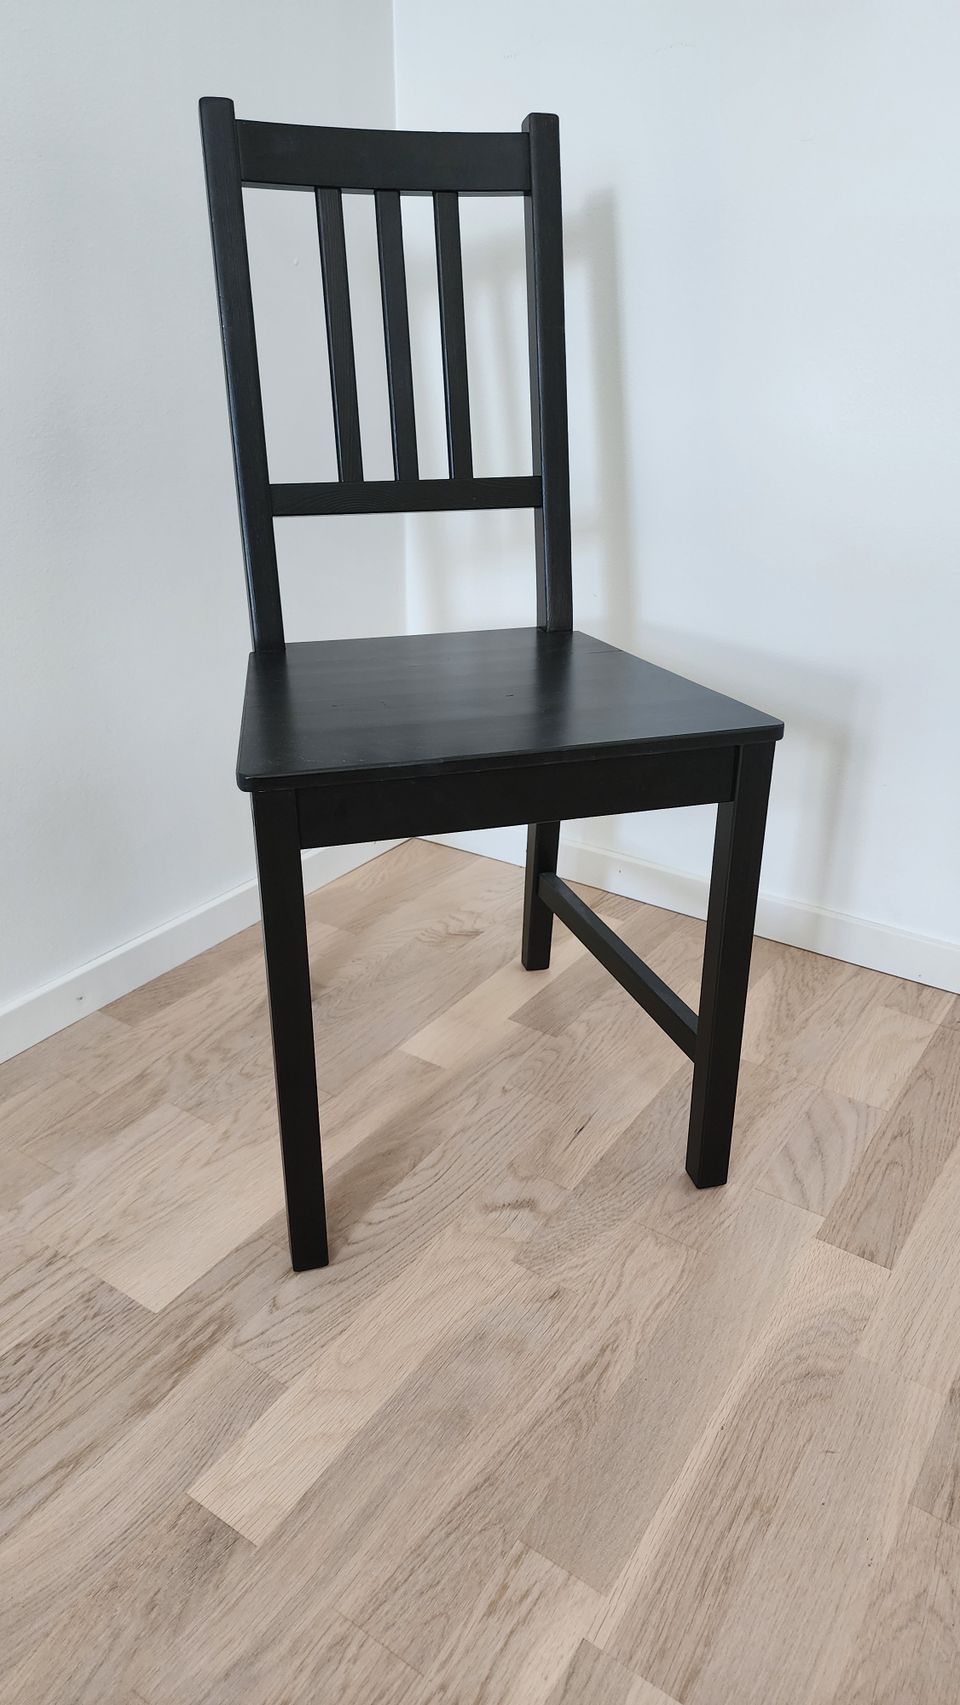 Ikea Stefan tuolit